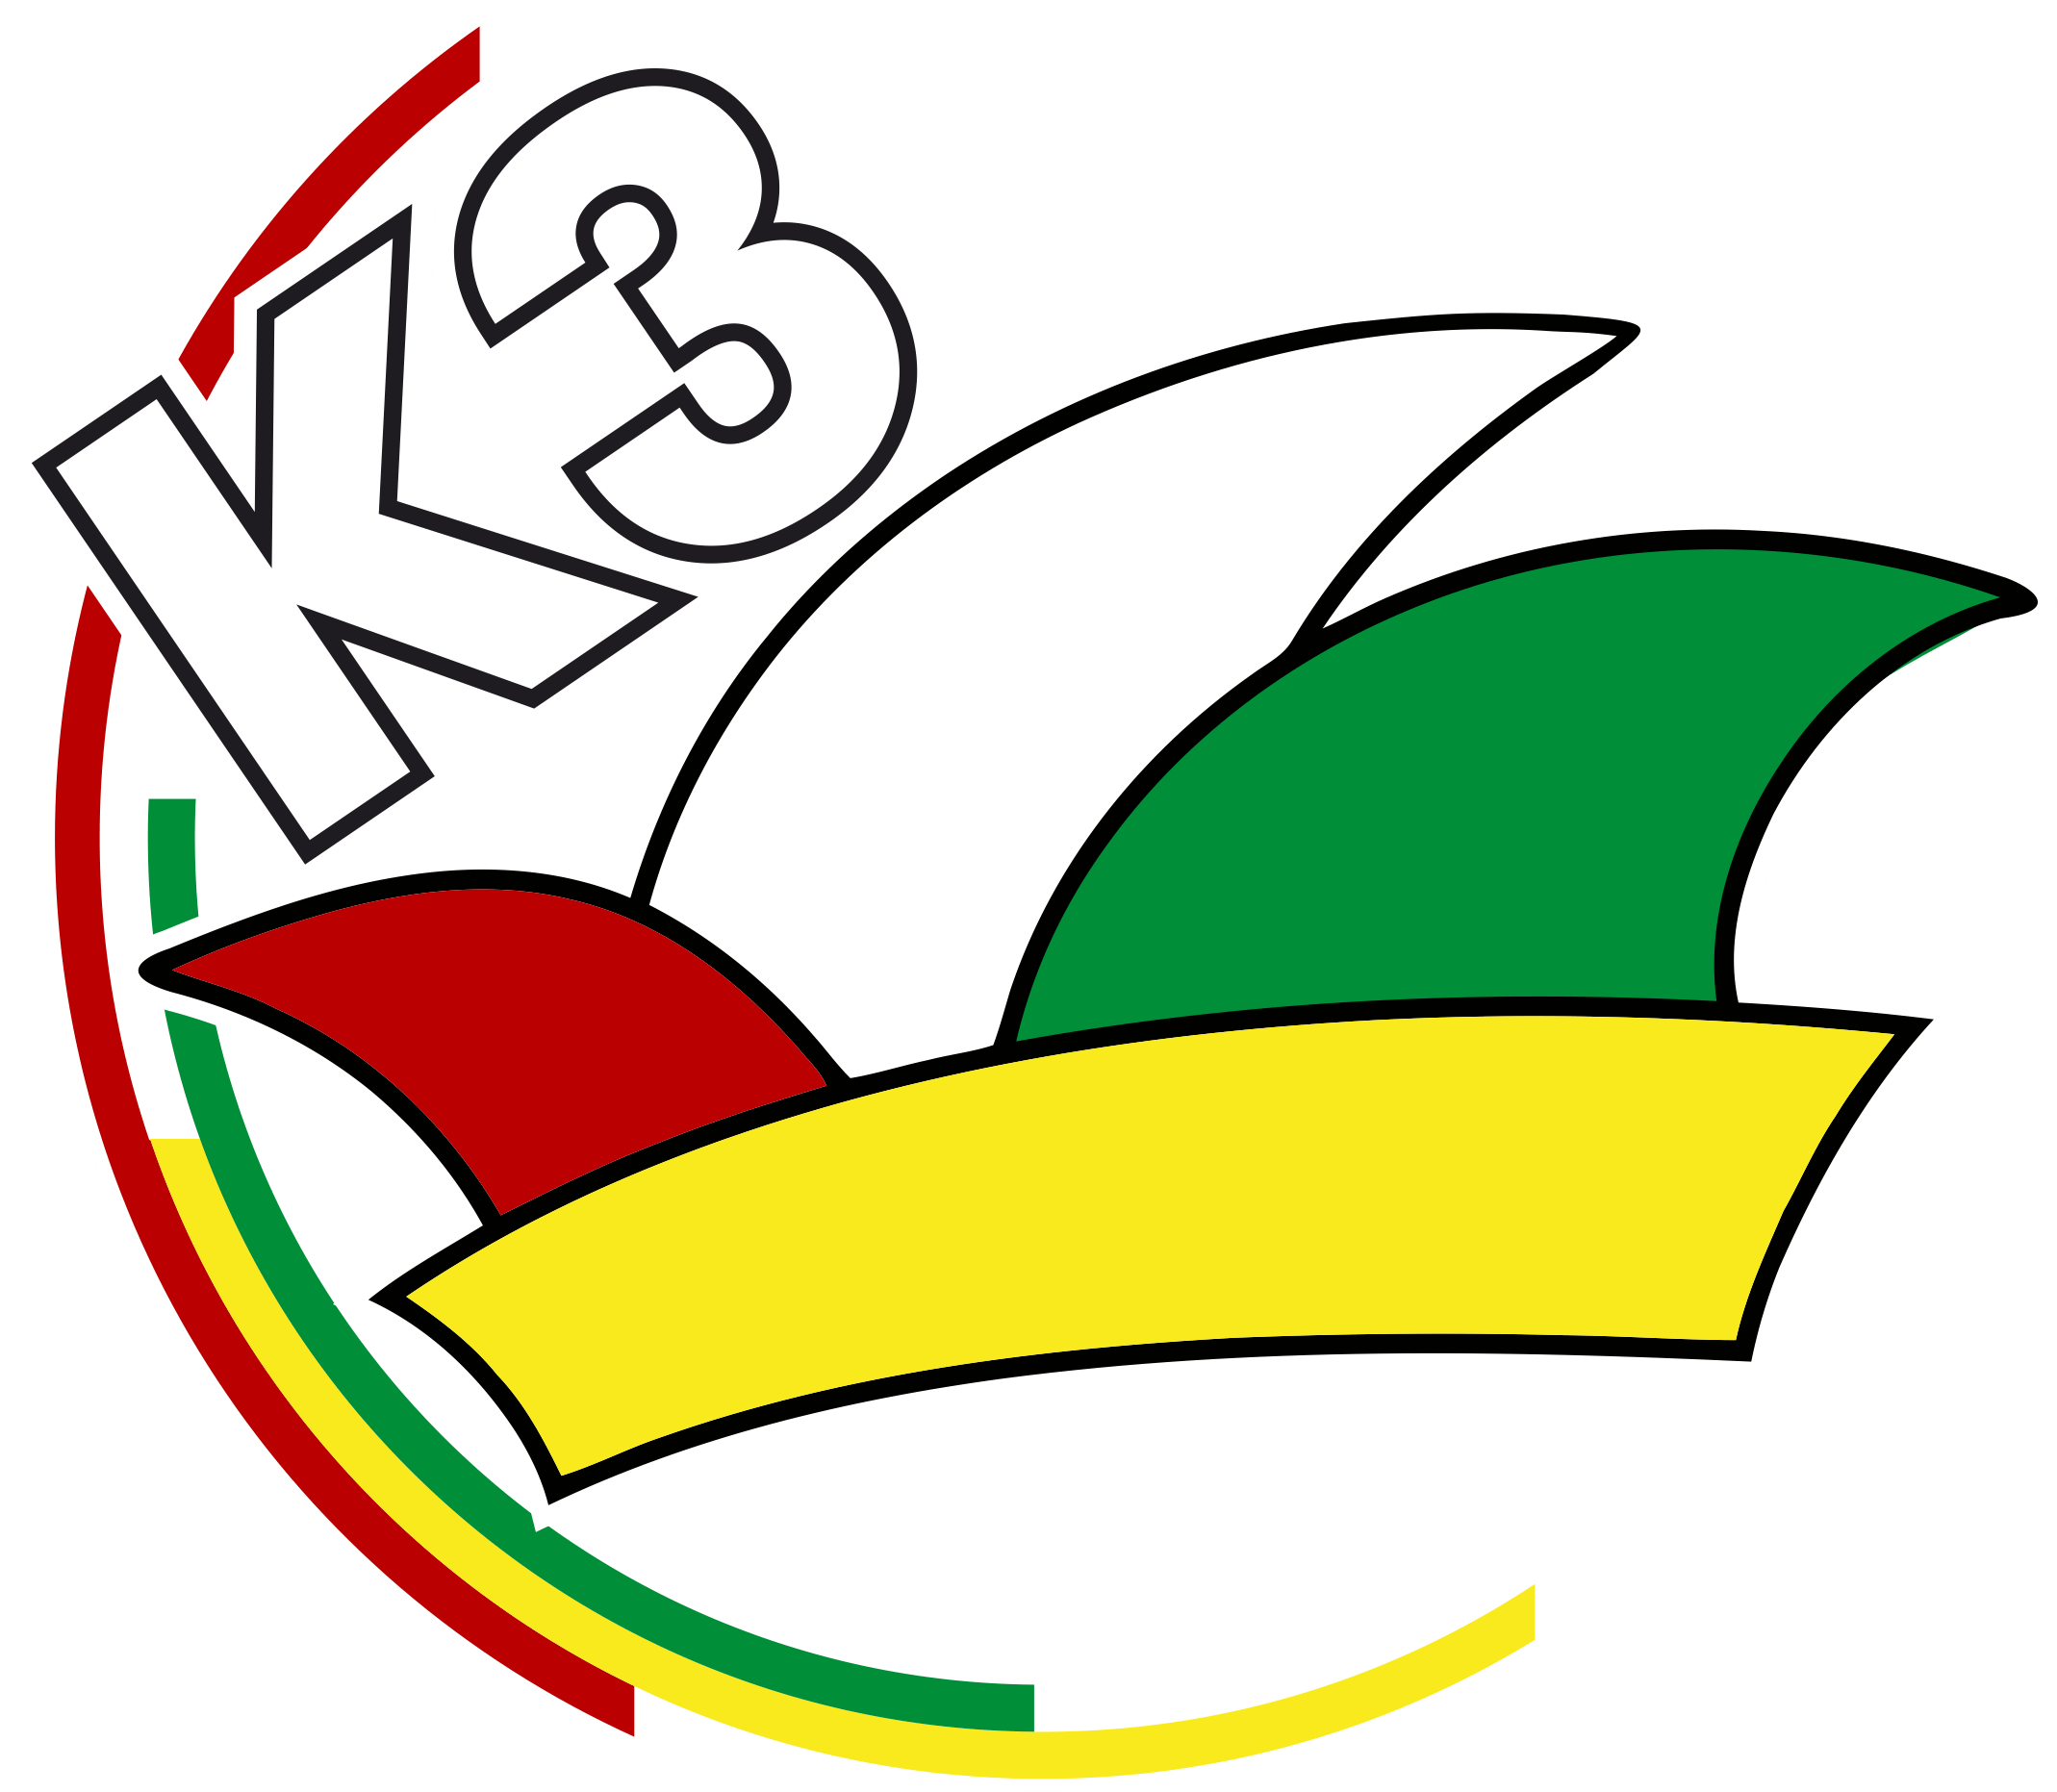 k3-logo-frei